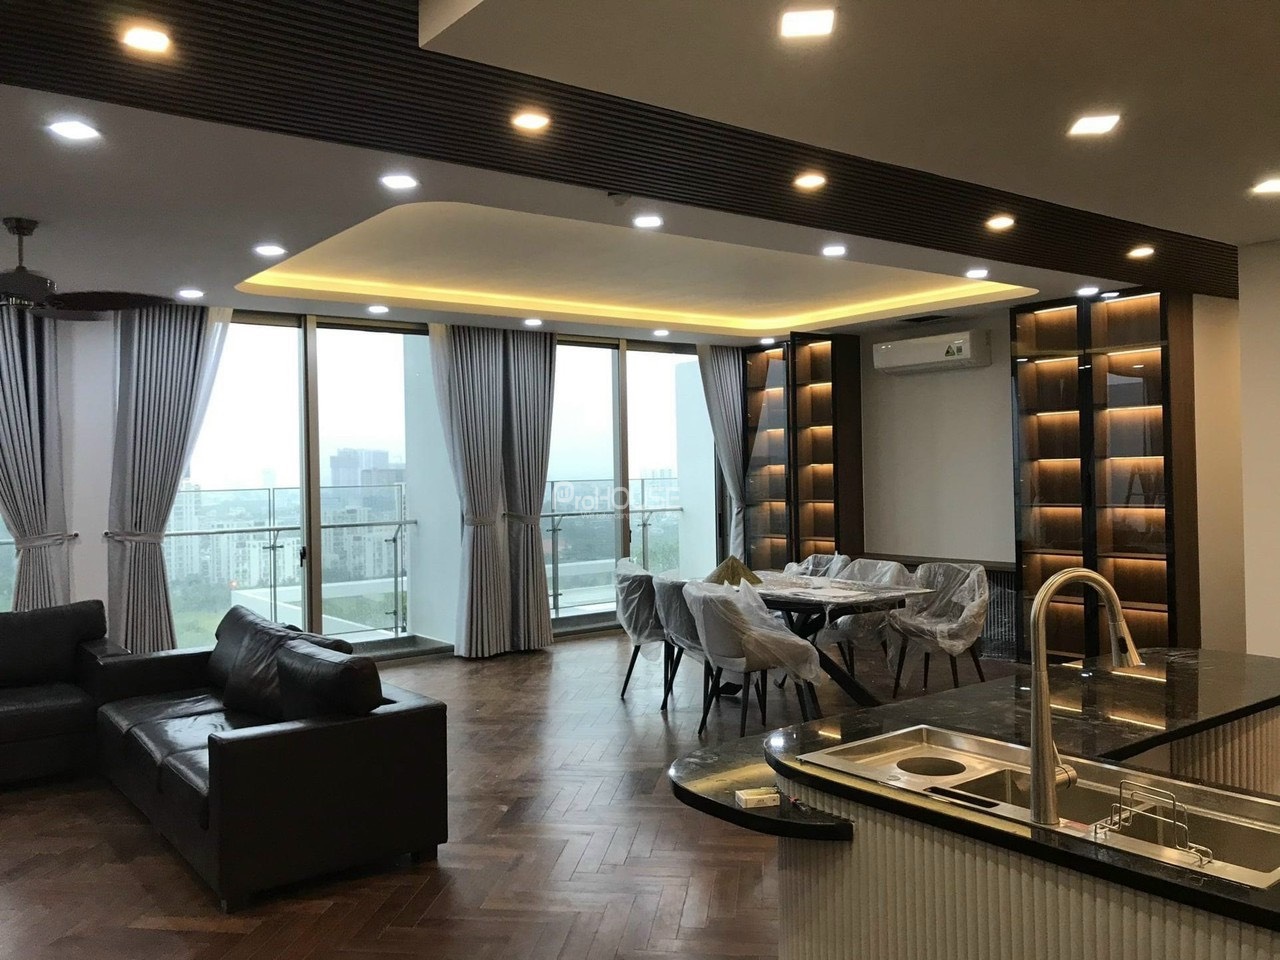 Bán căn hộ Penthouse siêu sang diện tích 247m2 ở Midtown với 5 phòng ngủ đầy đủ nội thất